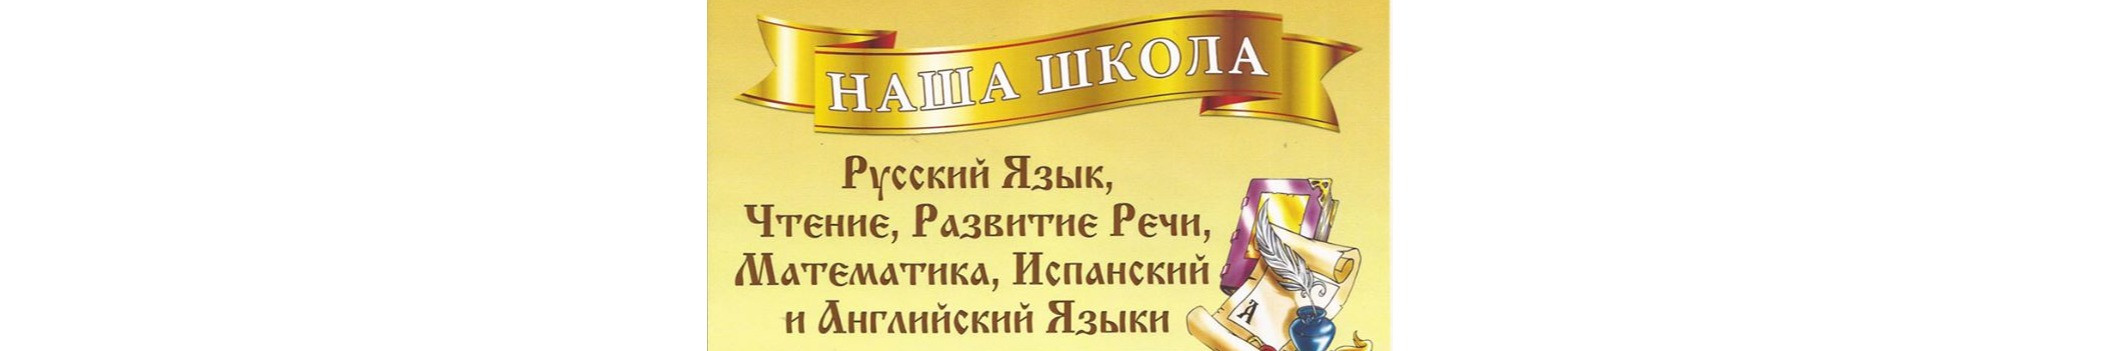 Наша Школа - русский язык для детей-билингвов